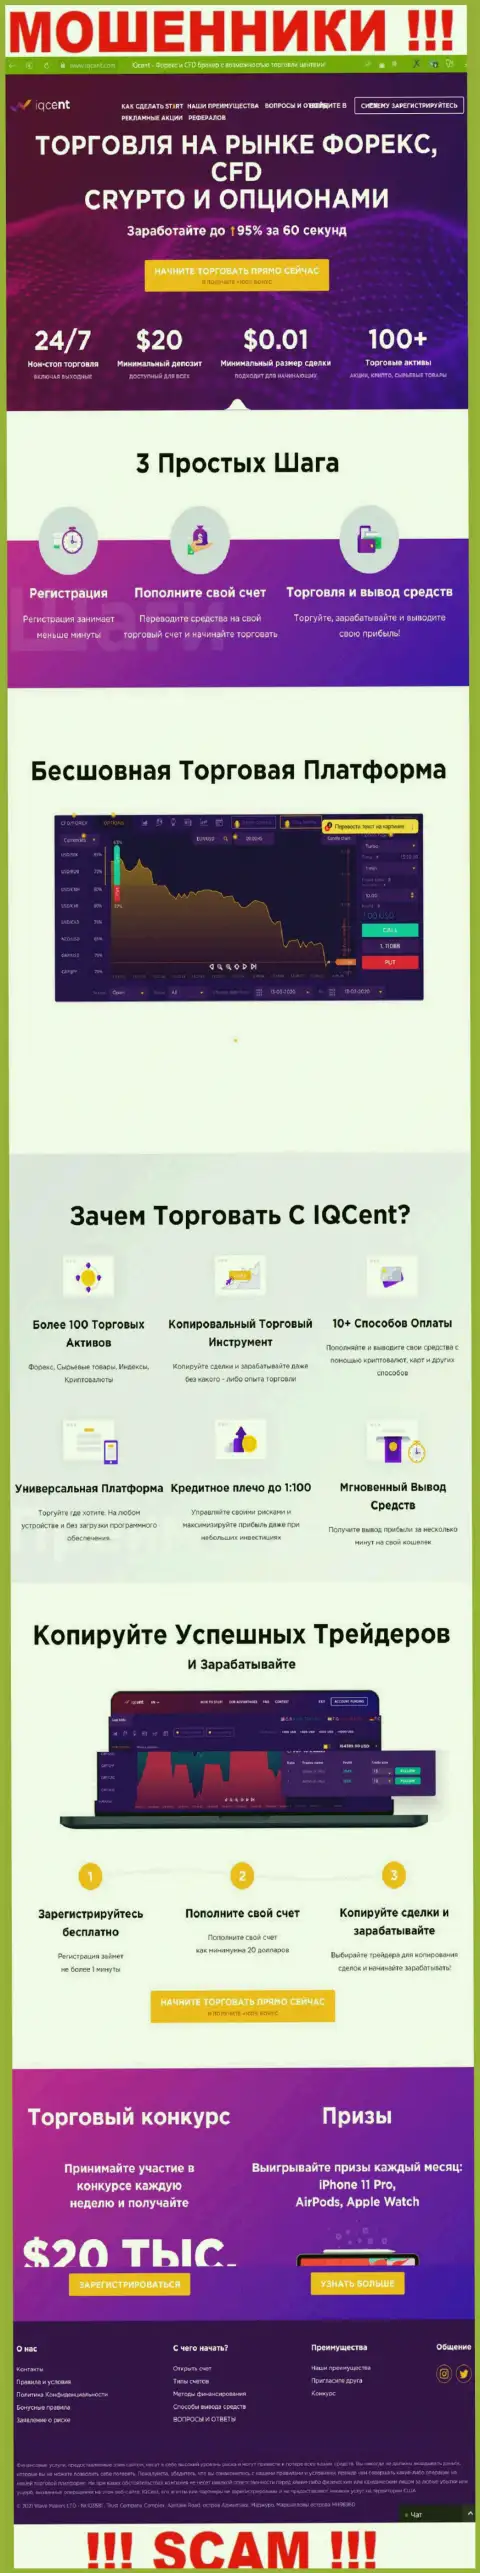 Официальный веб-портал мошенников IQ Cent, забитый инфой для наивных людей